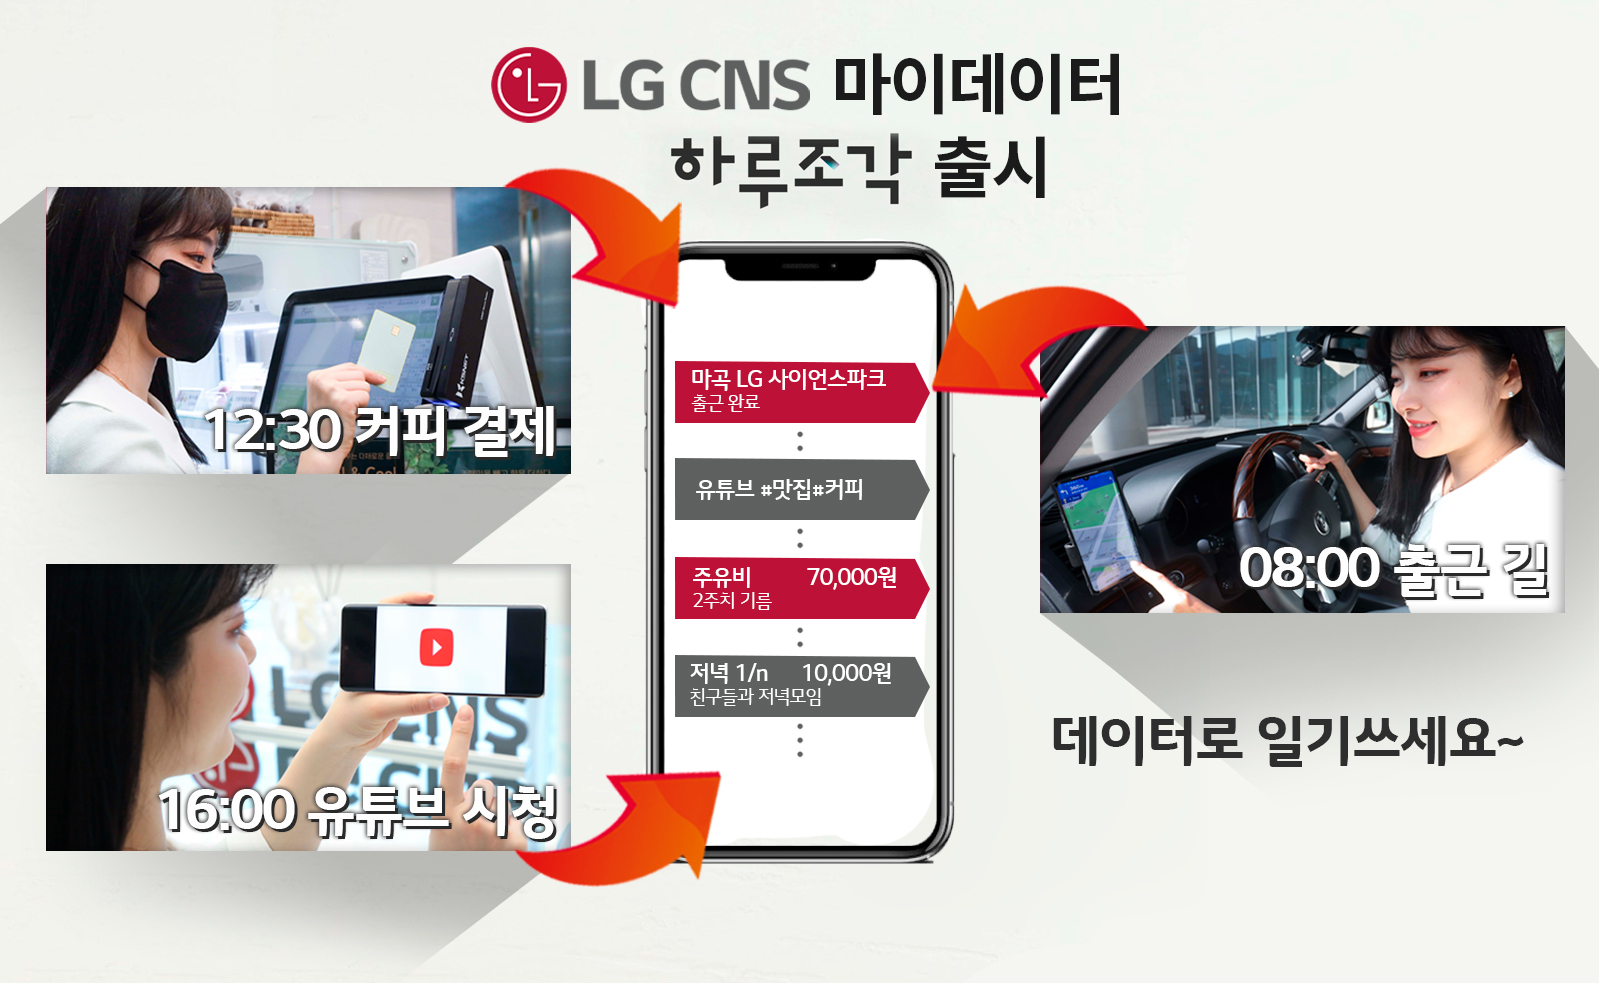 LG CNS 마이데이터 앱 ‘하루조각’ 출시